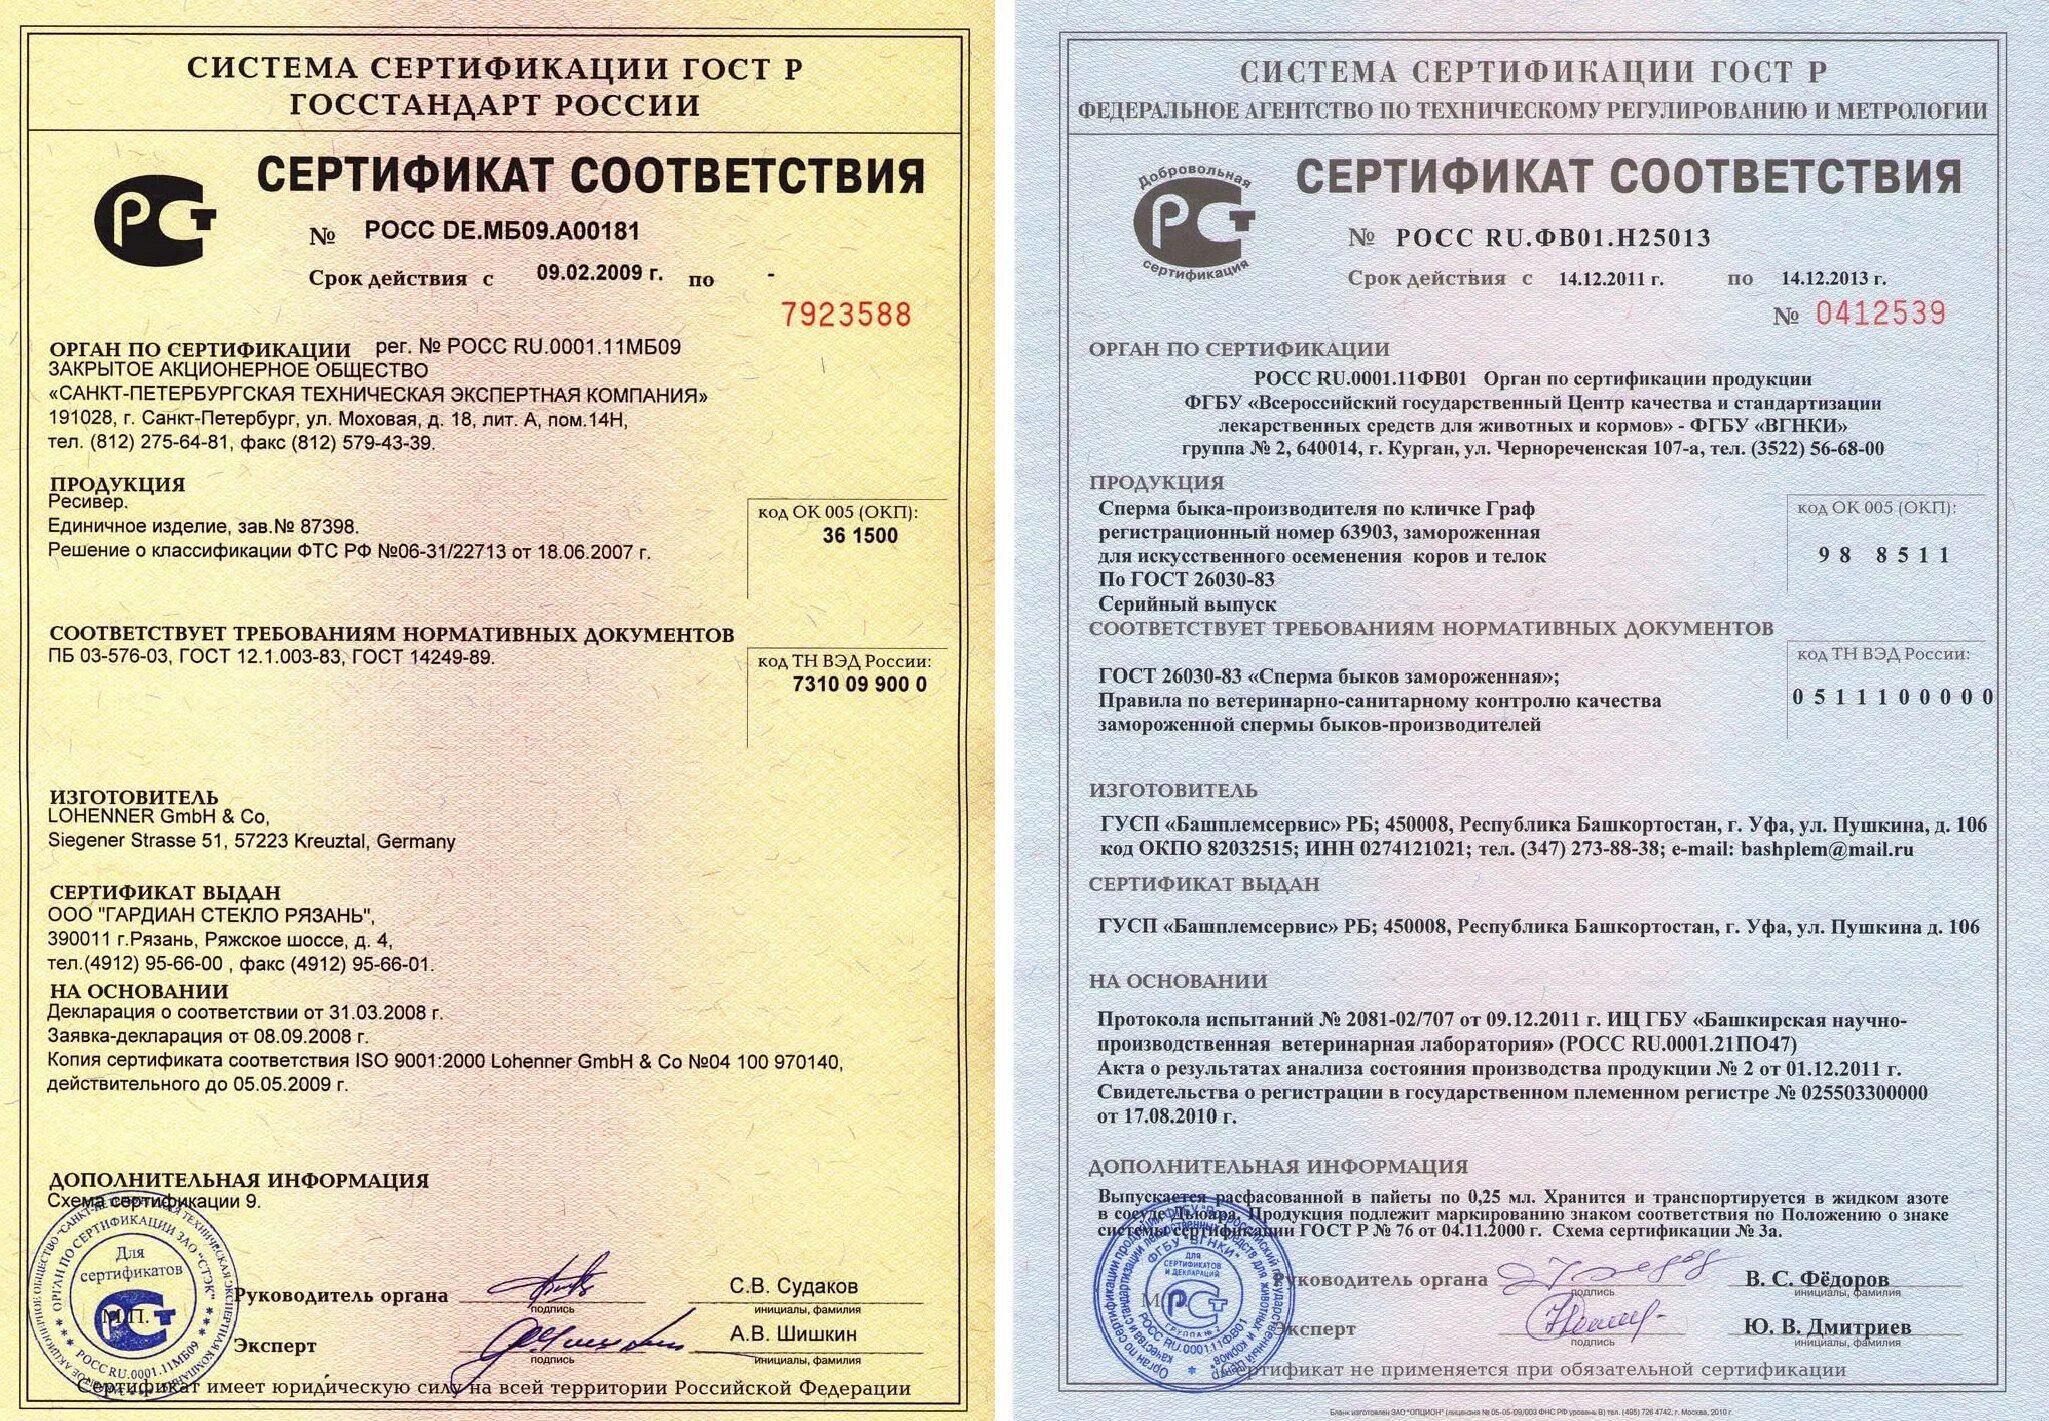 Смола эпоксидная Эд-20 сертификат соответствия. Смола Эд-20 сертификат соответствия. Сертификат cоответствия Epoxy Master смола.